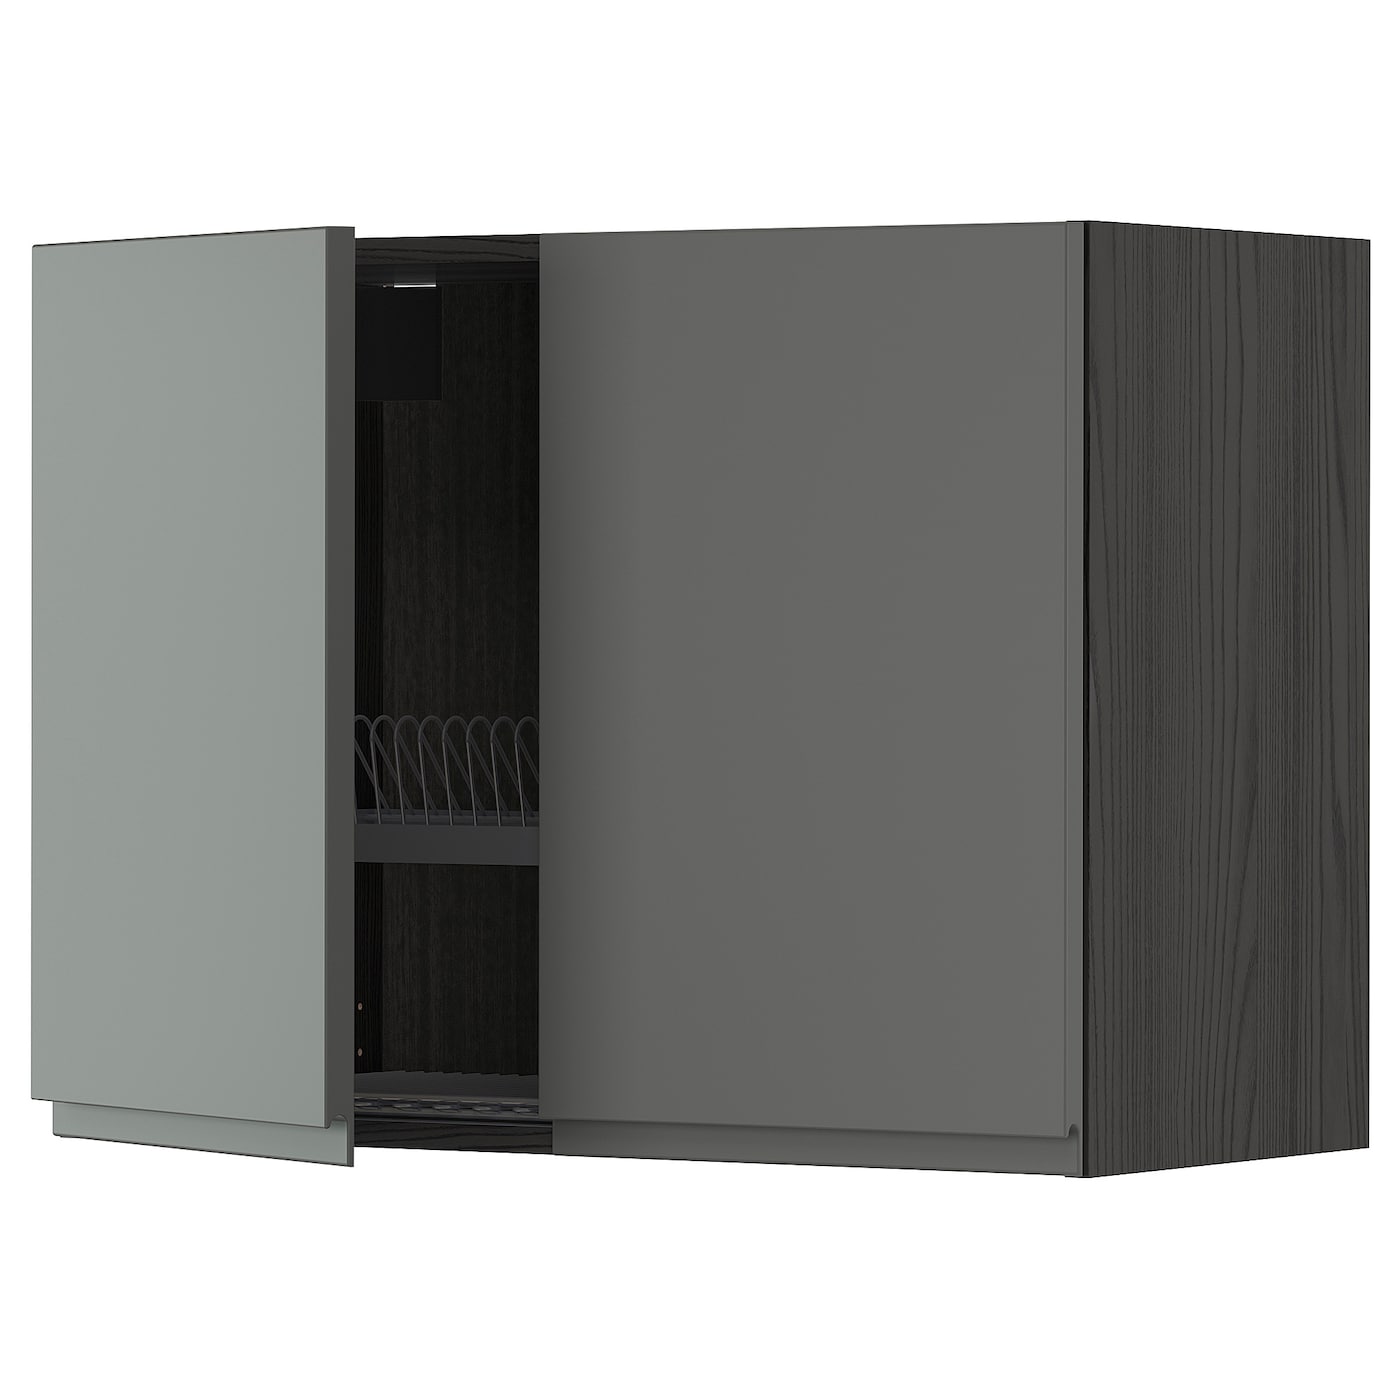 Навесной шкаф с сушилкой - METOD IKEA/ МЕТОД ИКЕА, 60х80 см, черный/серый